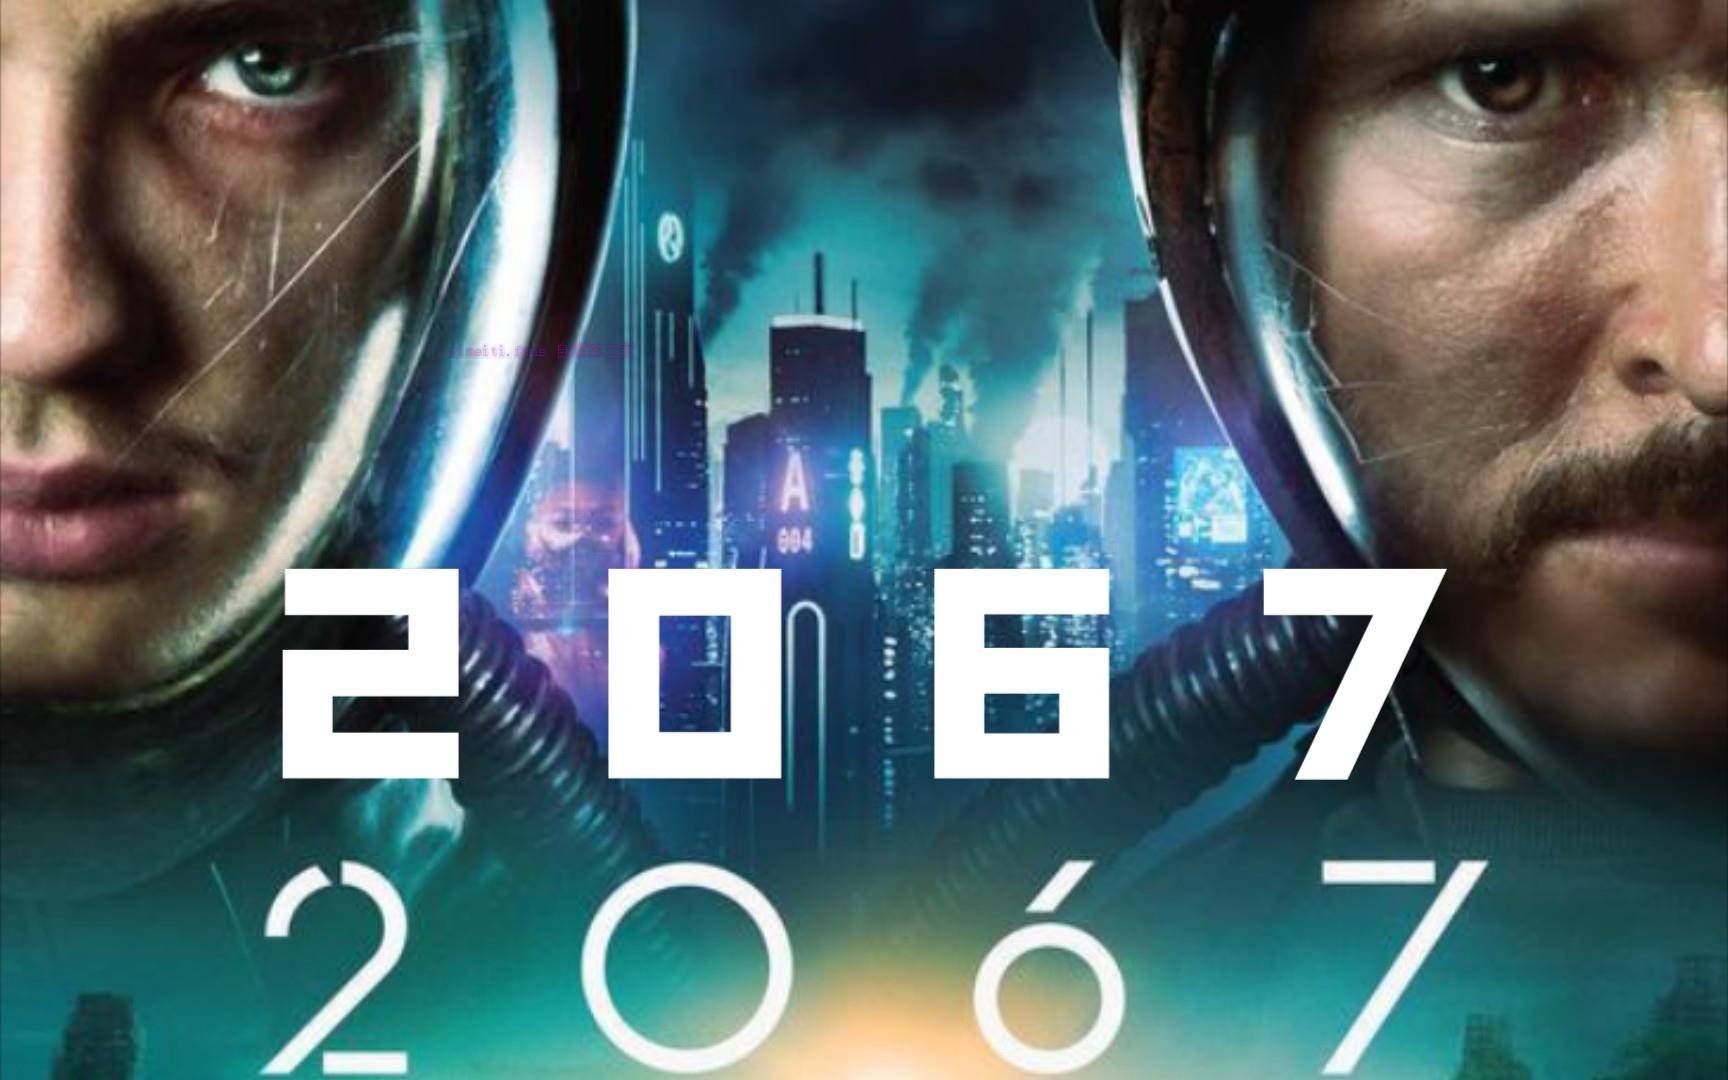 科幻电影《2067》解说文案/剧情详述/解说教程-自媒体之家